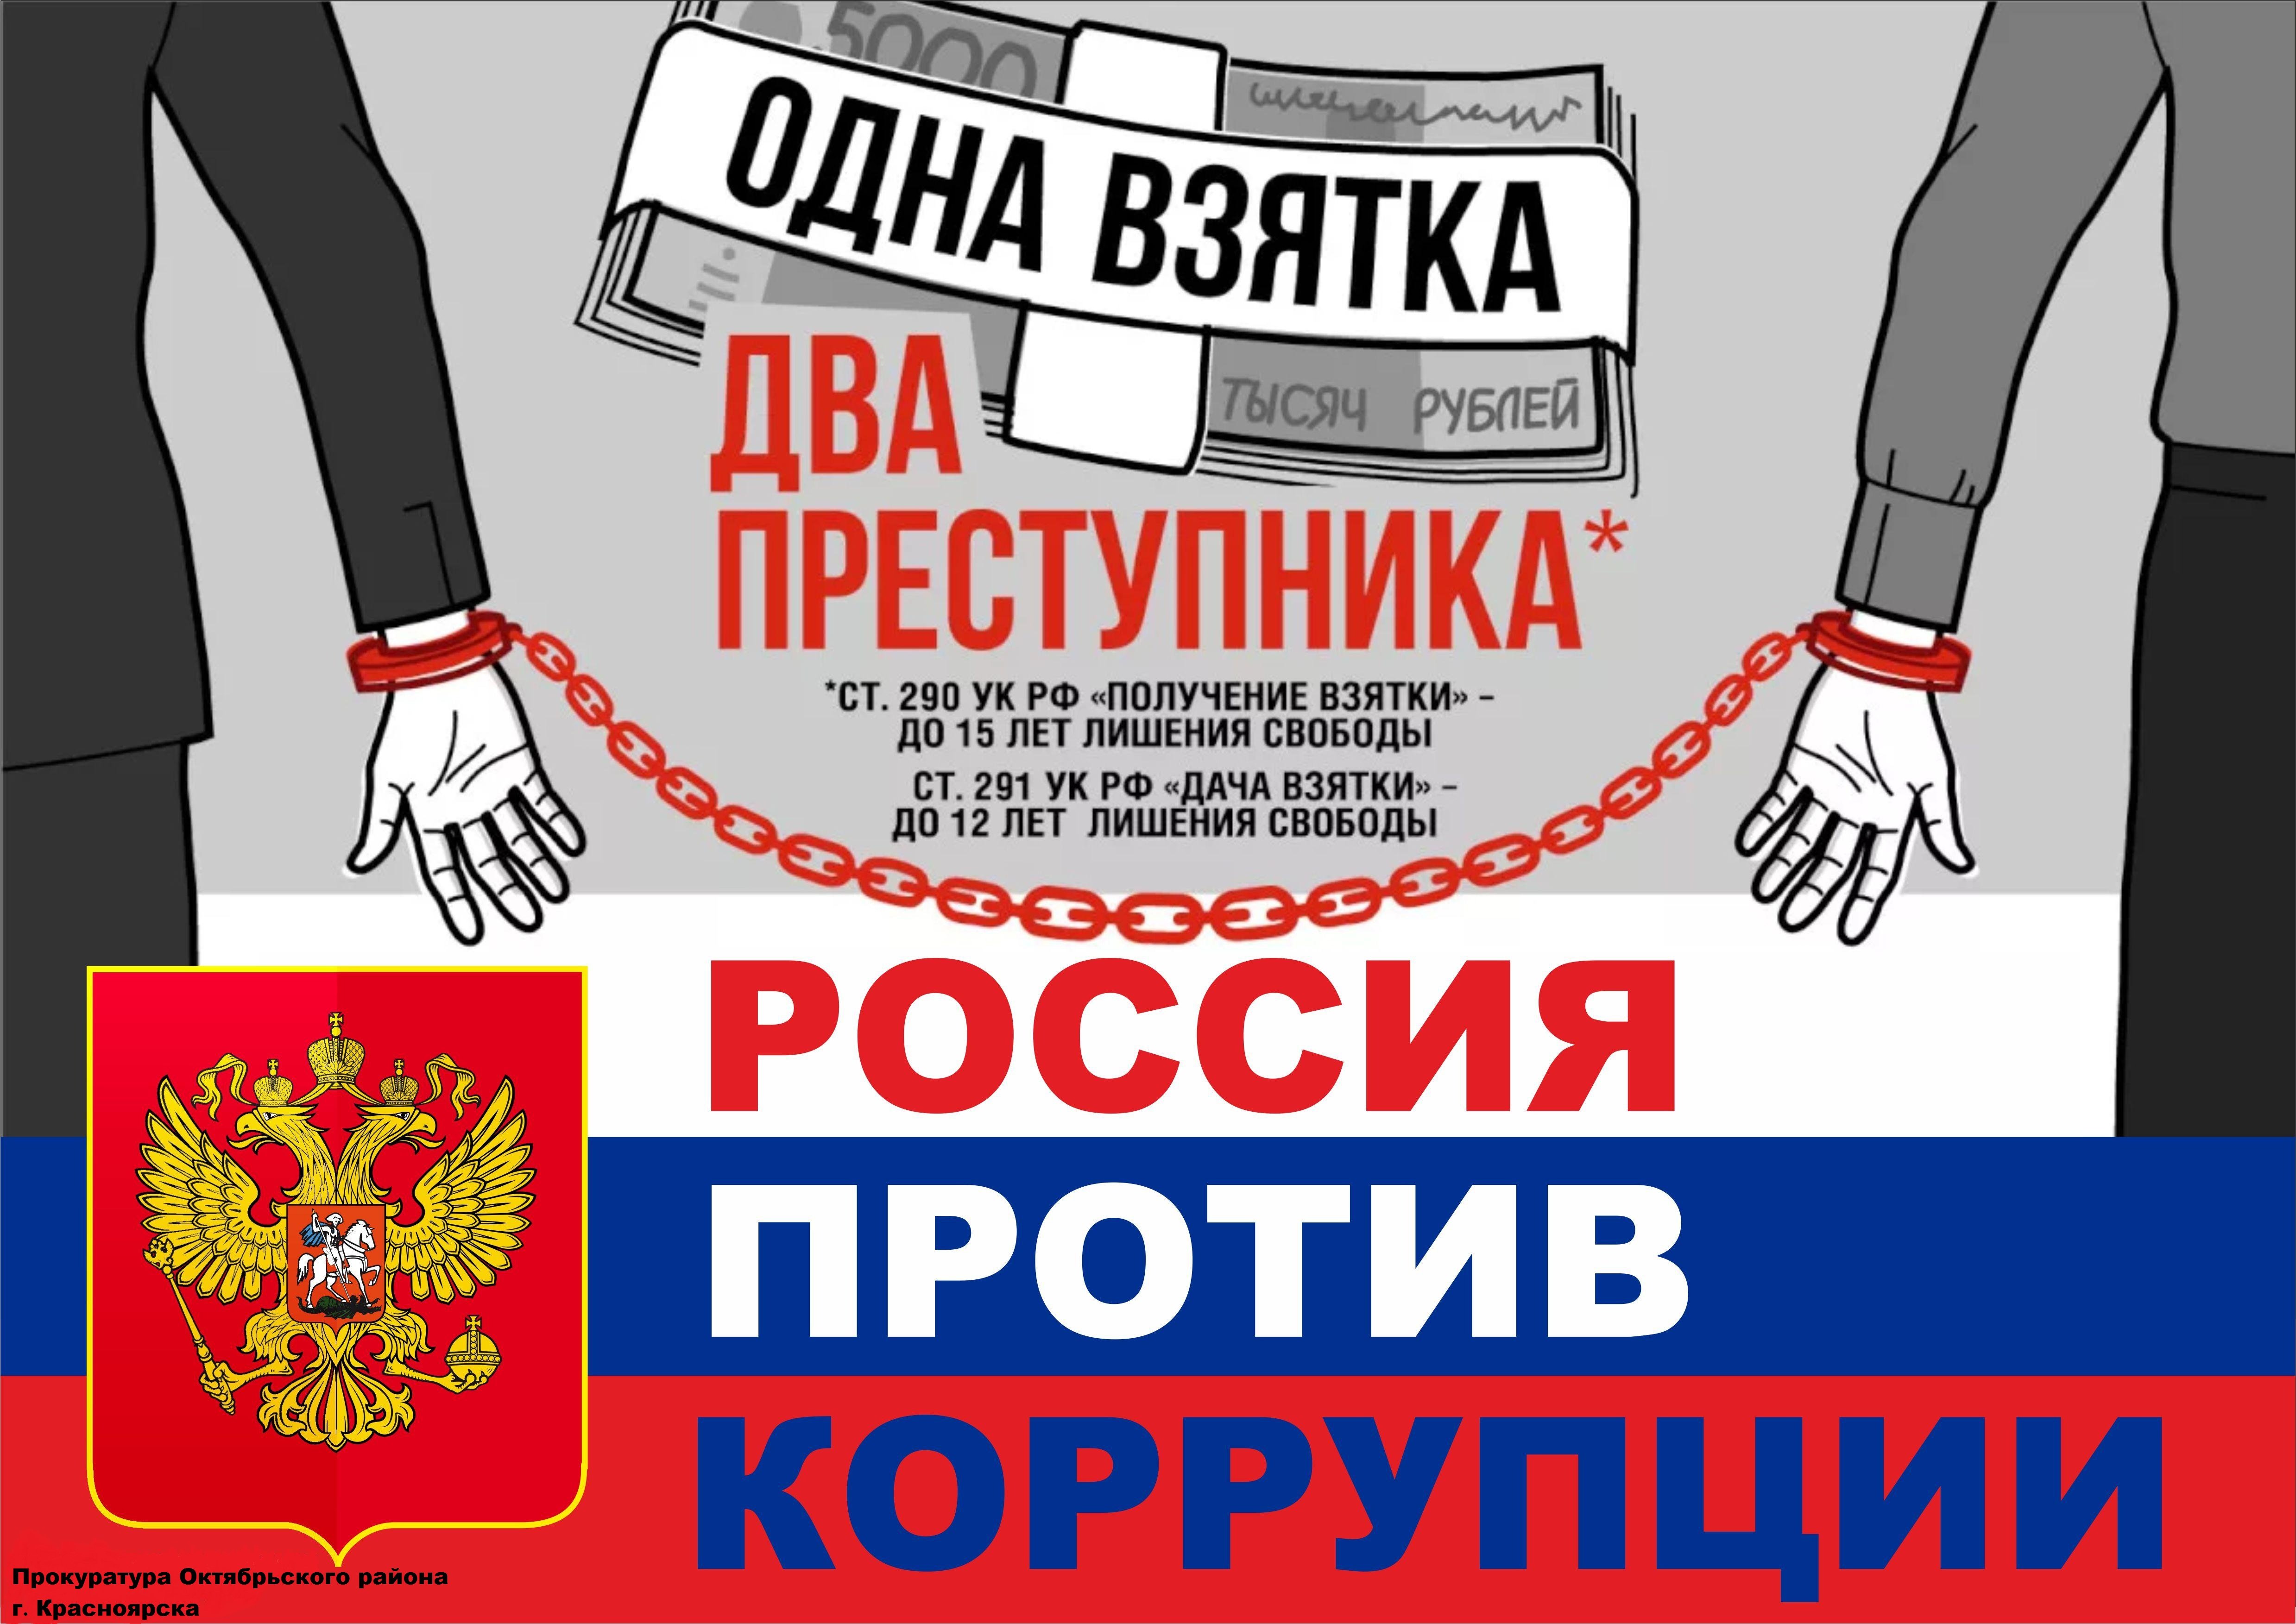 Рабочая группа коррупции. Коррупция. Борьба с коррупцией. Россия против коррупции. Антикоррупционный плакат.